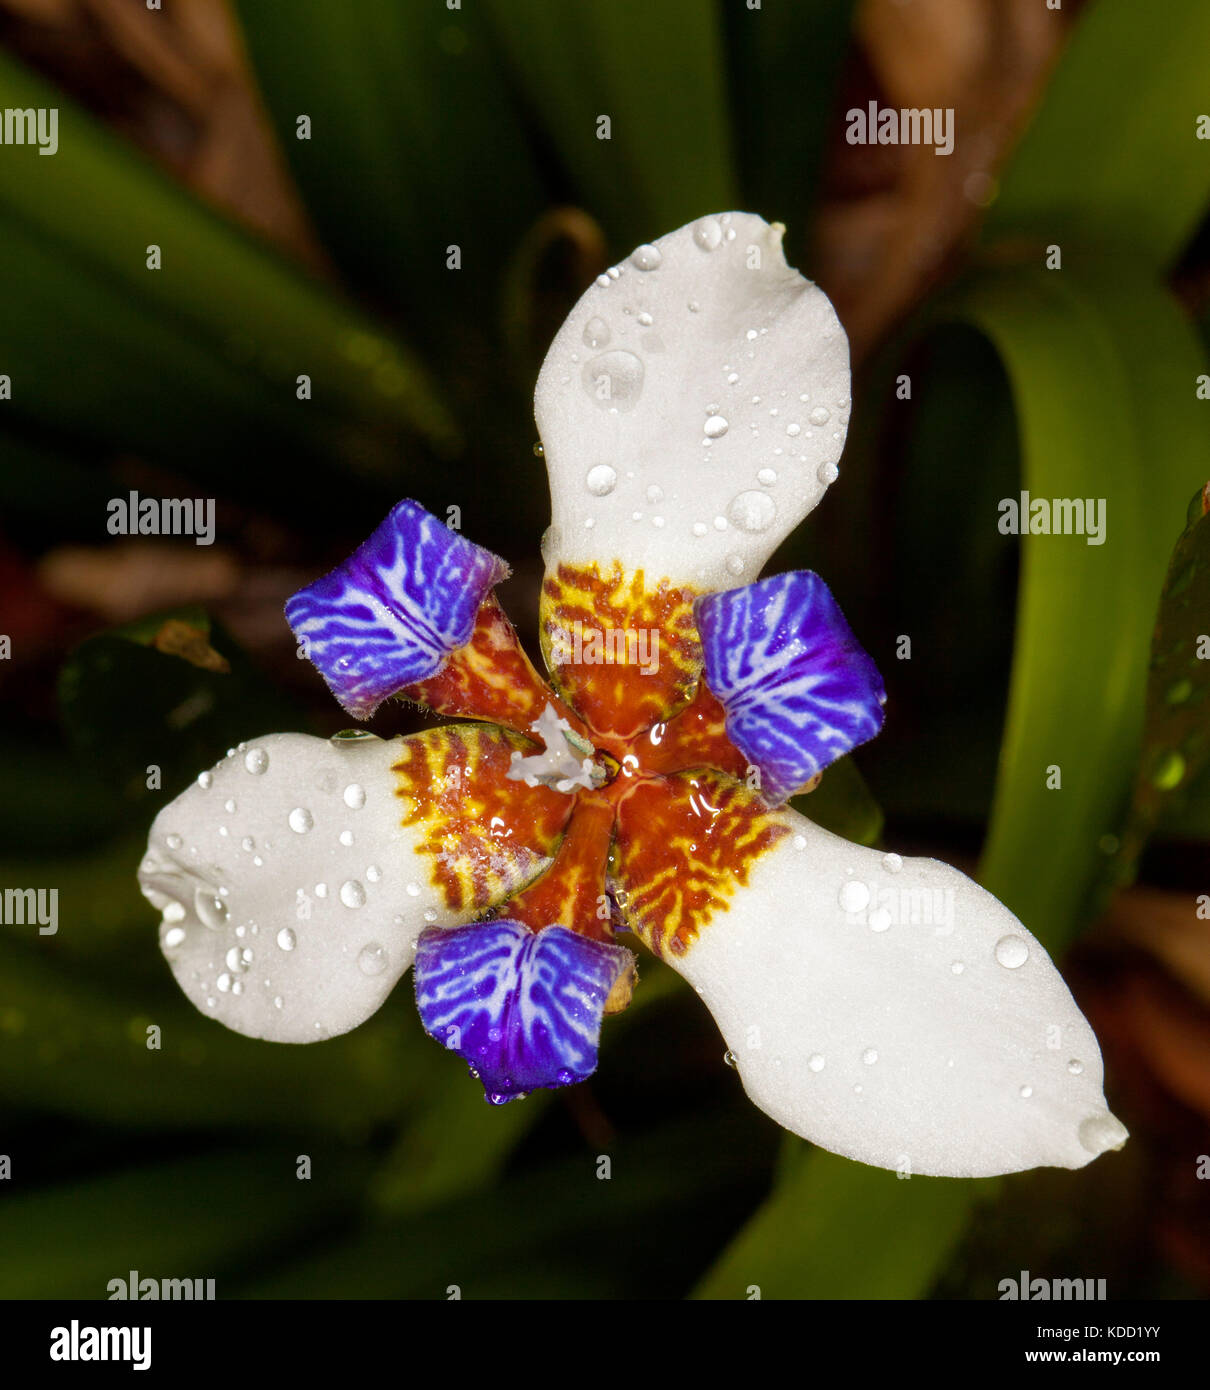 Insolito bianco e blu fiore di neomarica gracilis, passeggiate iris, con le gocce di pioggia su petali sullo sfondo del fogliame verde scuro Foto Stock